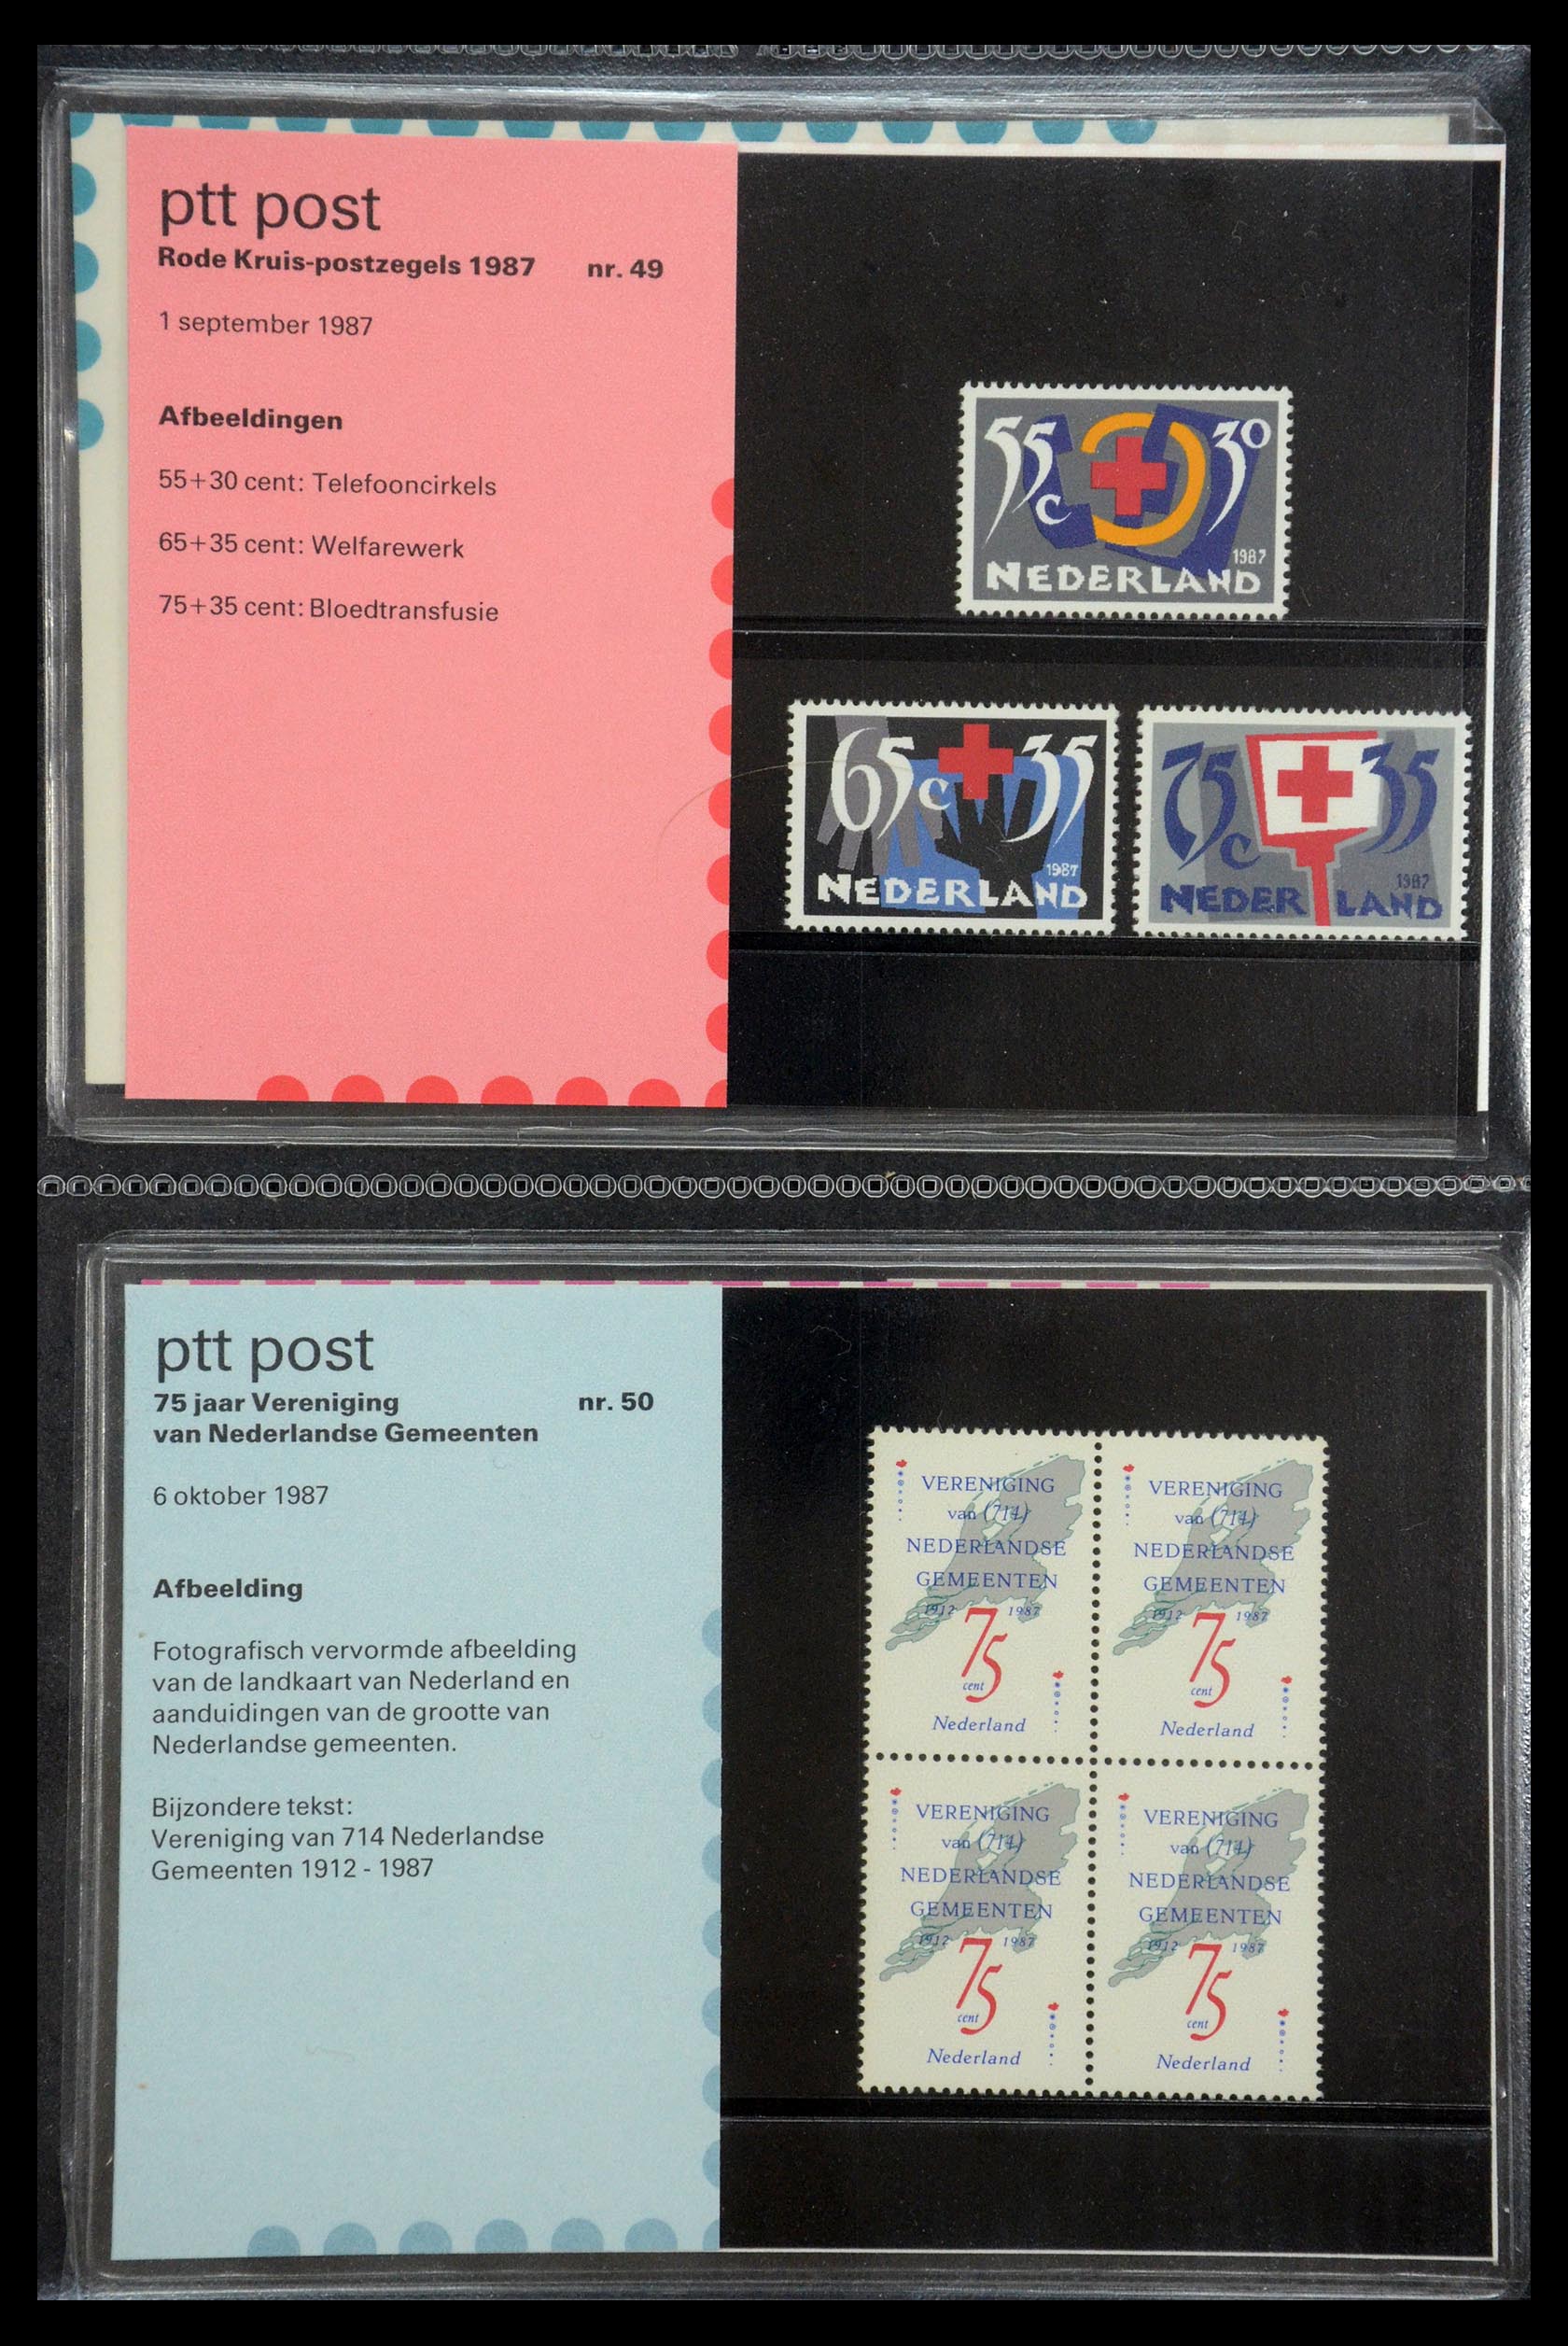 35187 025 - Stamp Collection 35187 Netherlands PTT presentation packs 1982-2019!